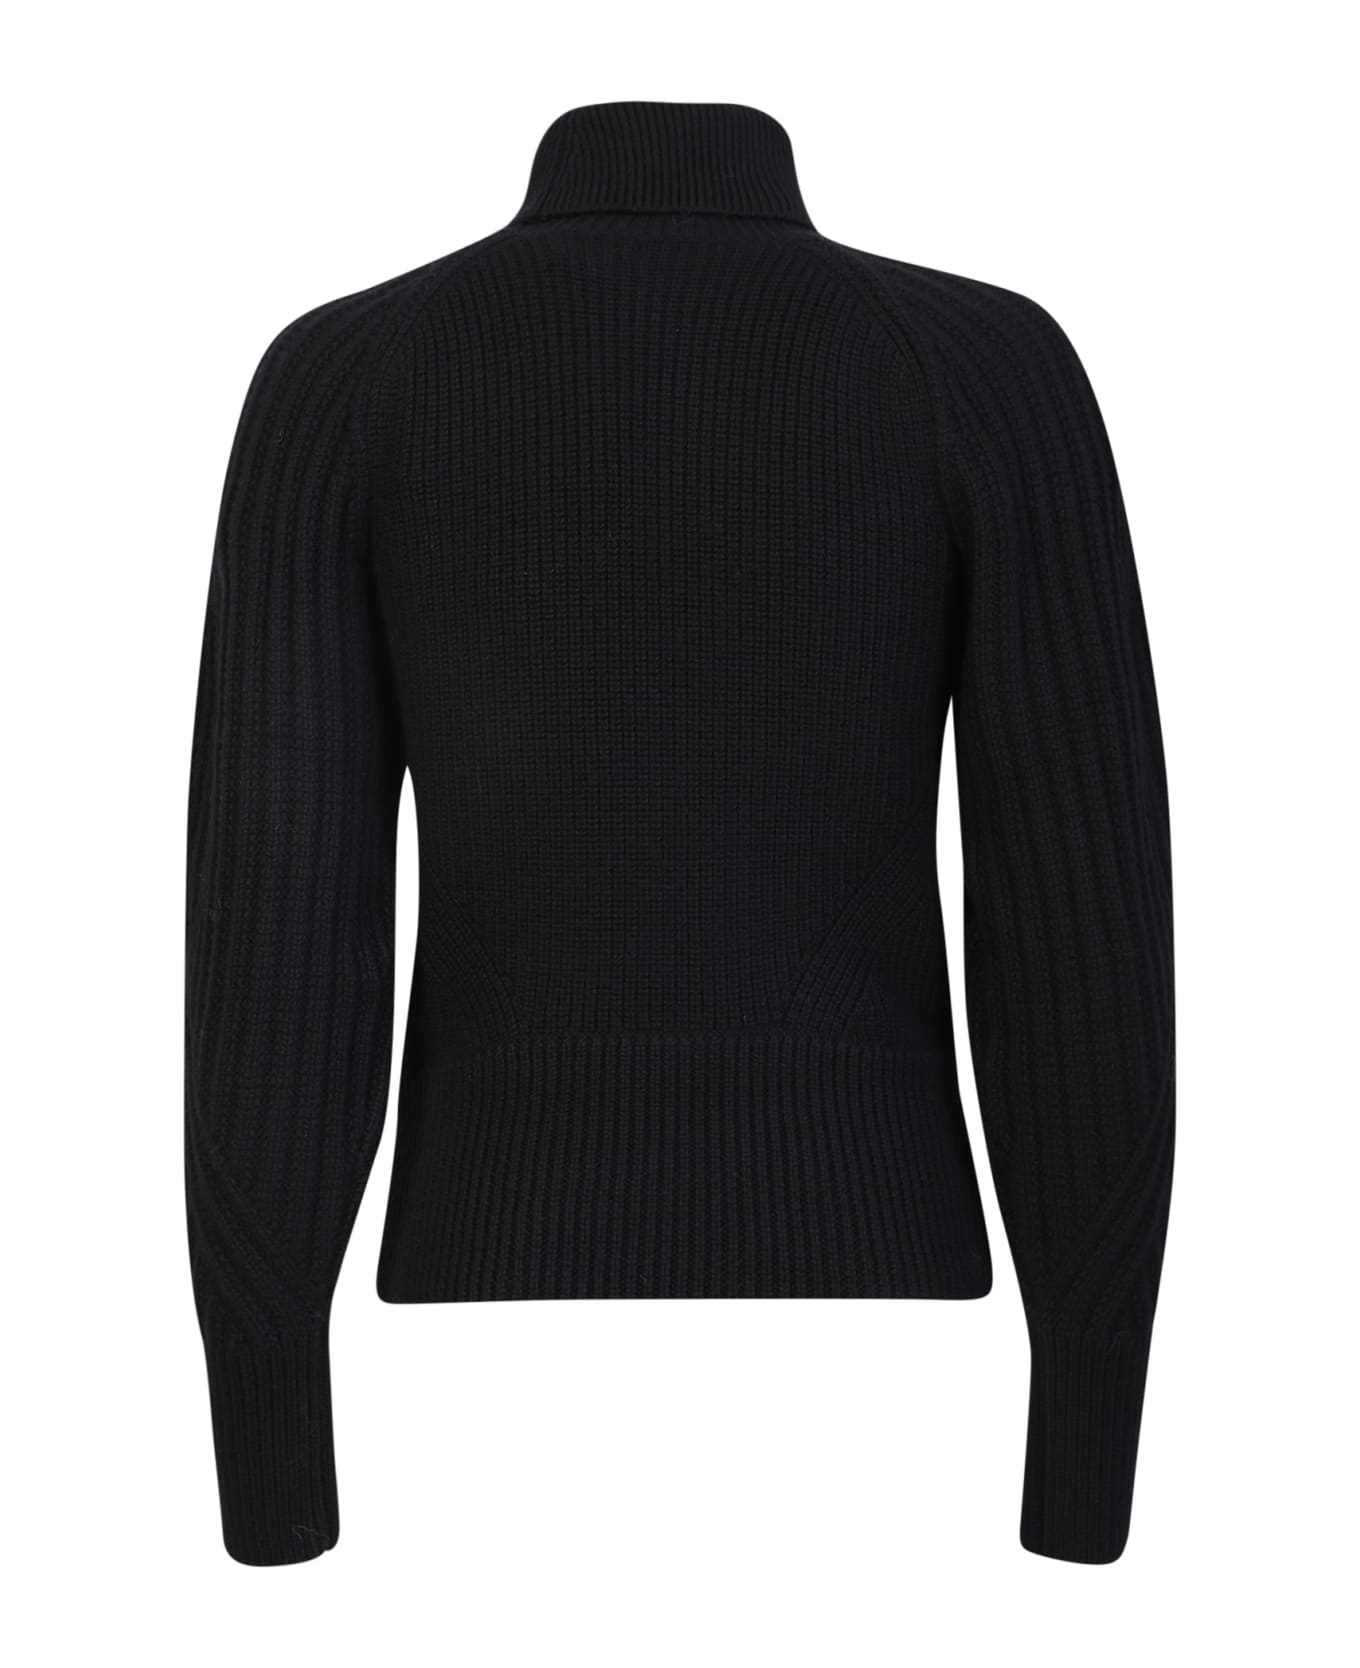 IRO Heart Neckline Wool Sweater In Black - Black ニットウェア